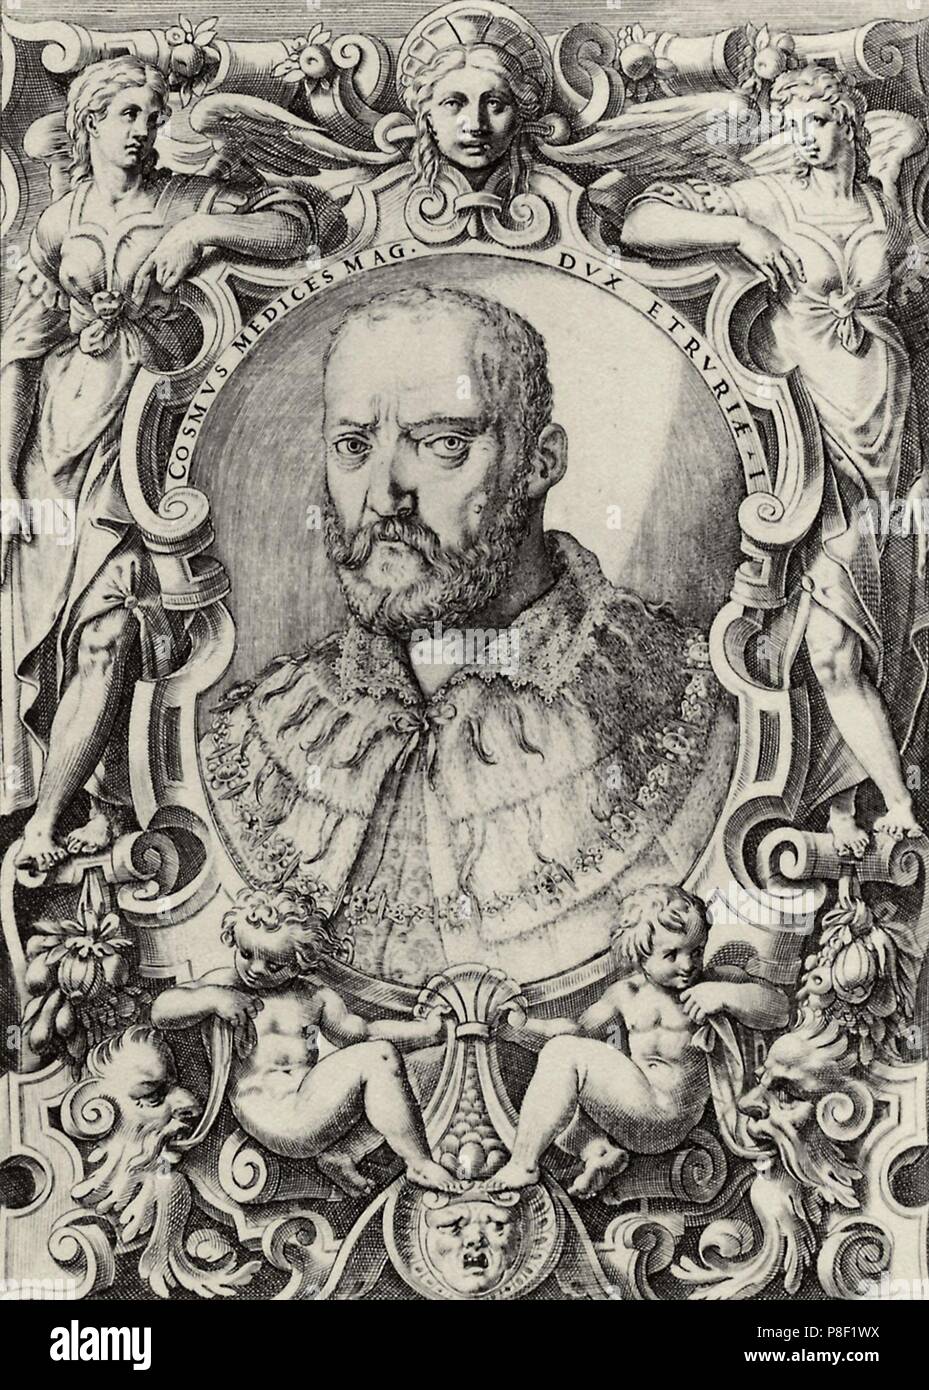 Portrait of Grand Duke of Tuscany Cosimo I de' Medici (1519-1574). Museum: PRIVATE COLLECTION. Stock Photo